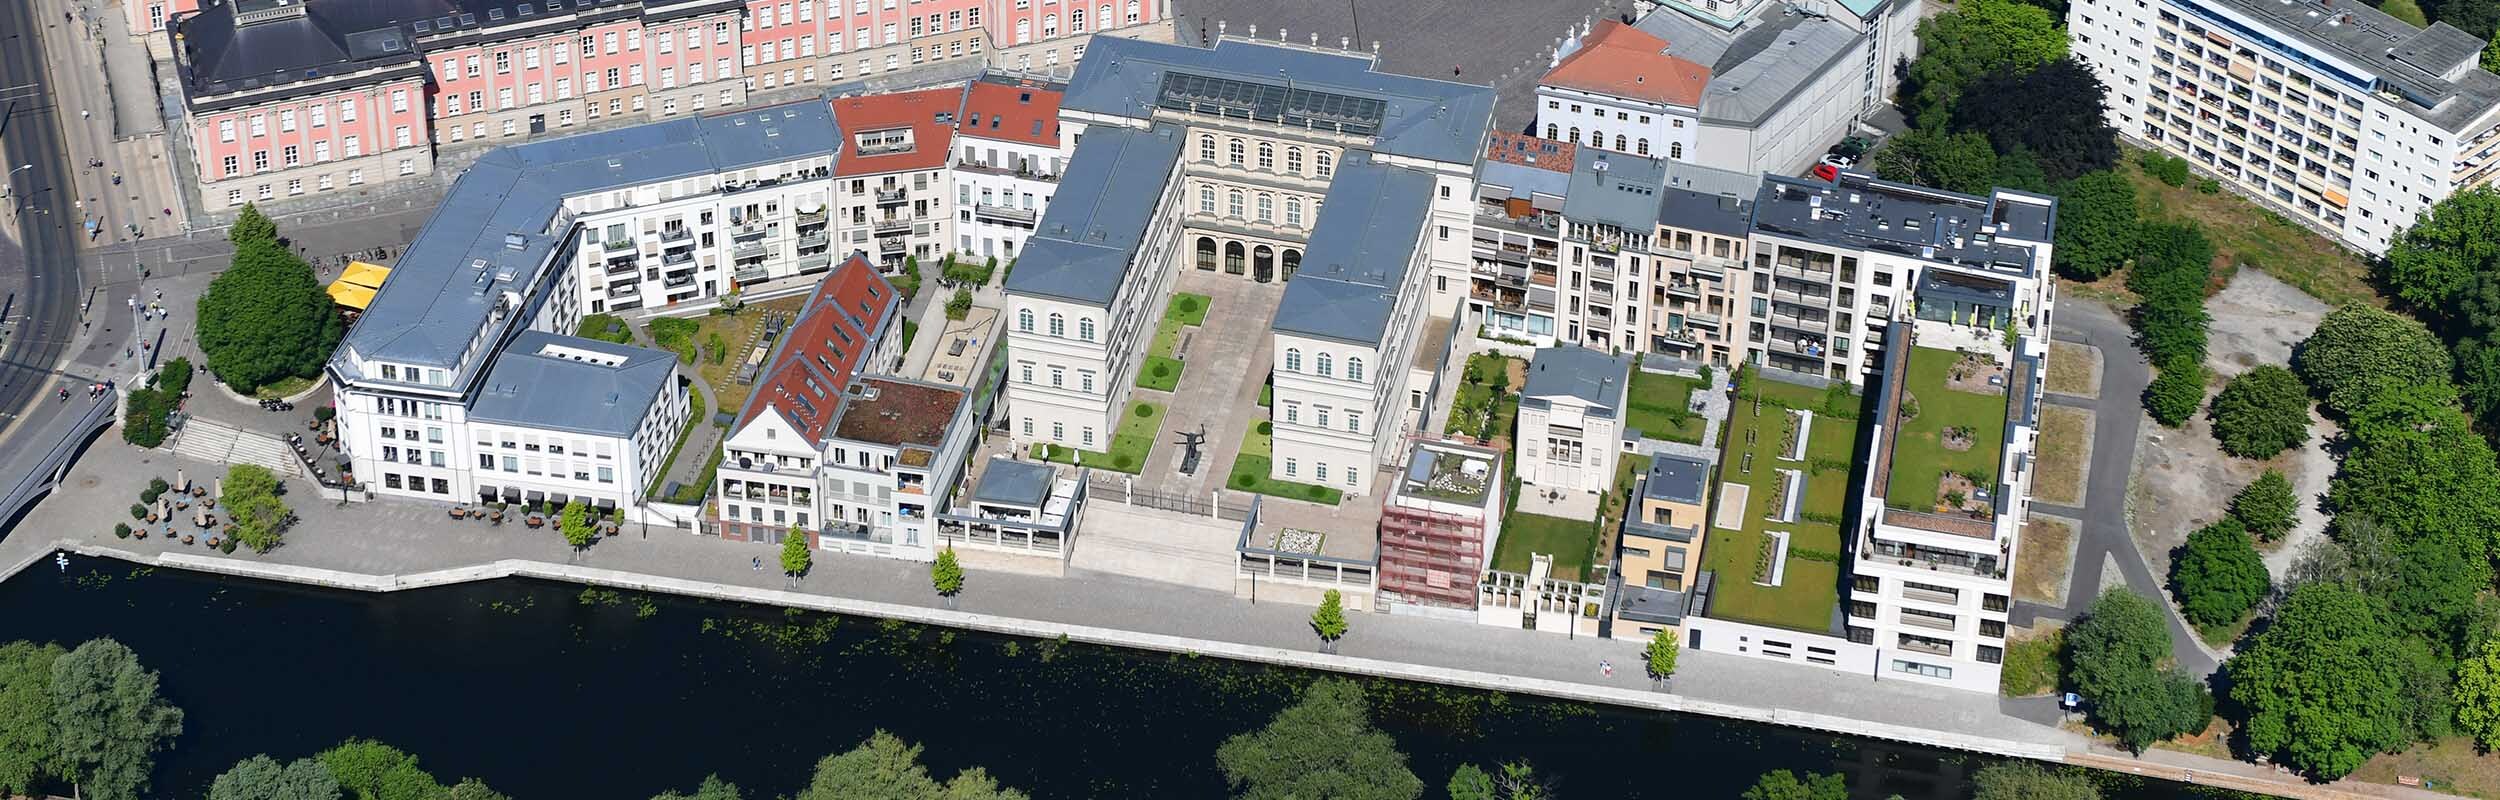 Foto: Luftbild der Neubauten an der Uferpromenade mit Blick in deren Innenhöfe.